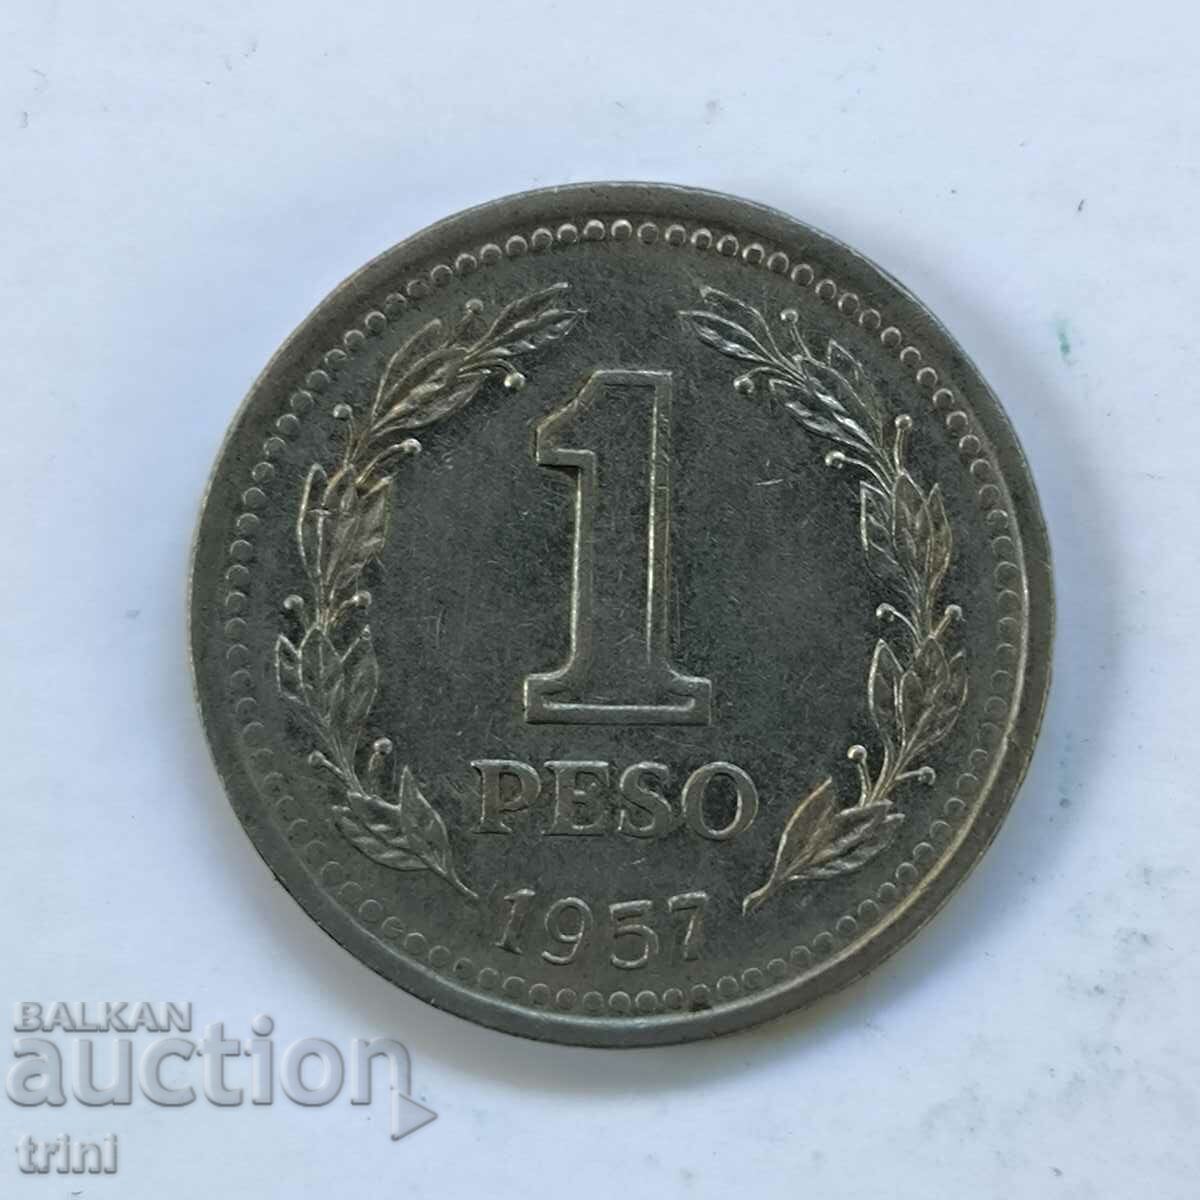 Argentina 1 peso 1957